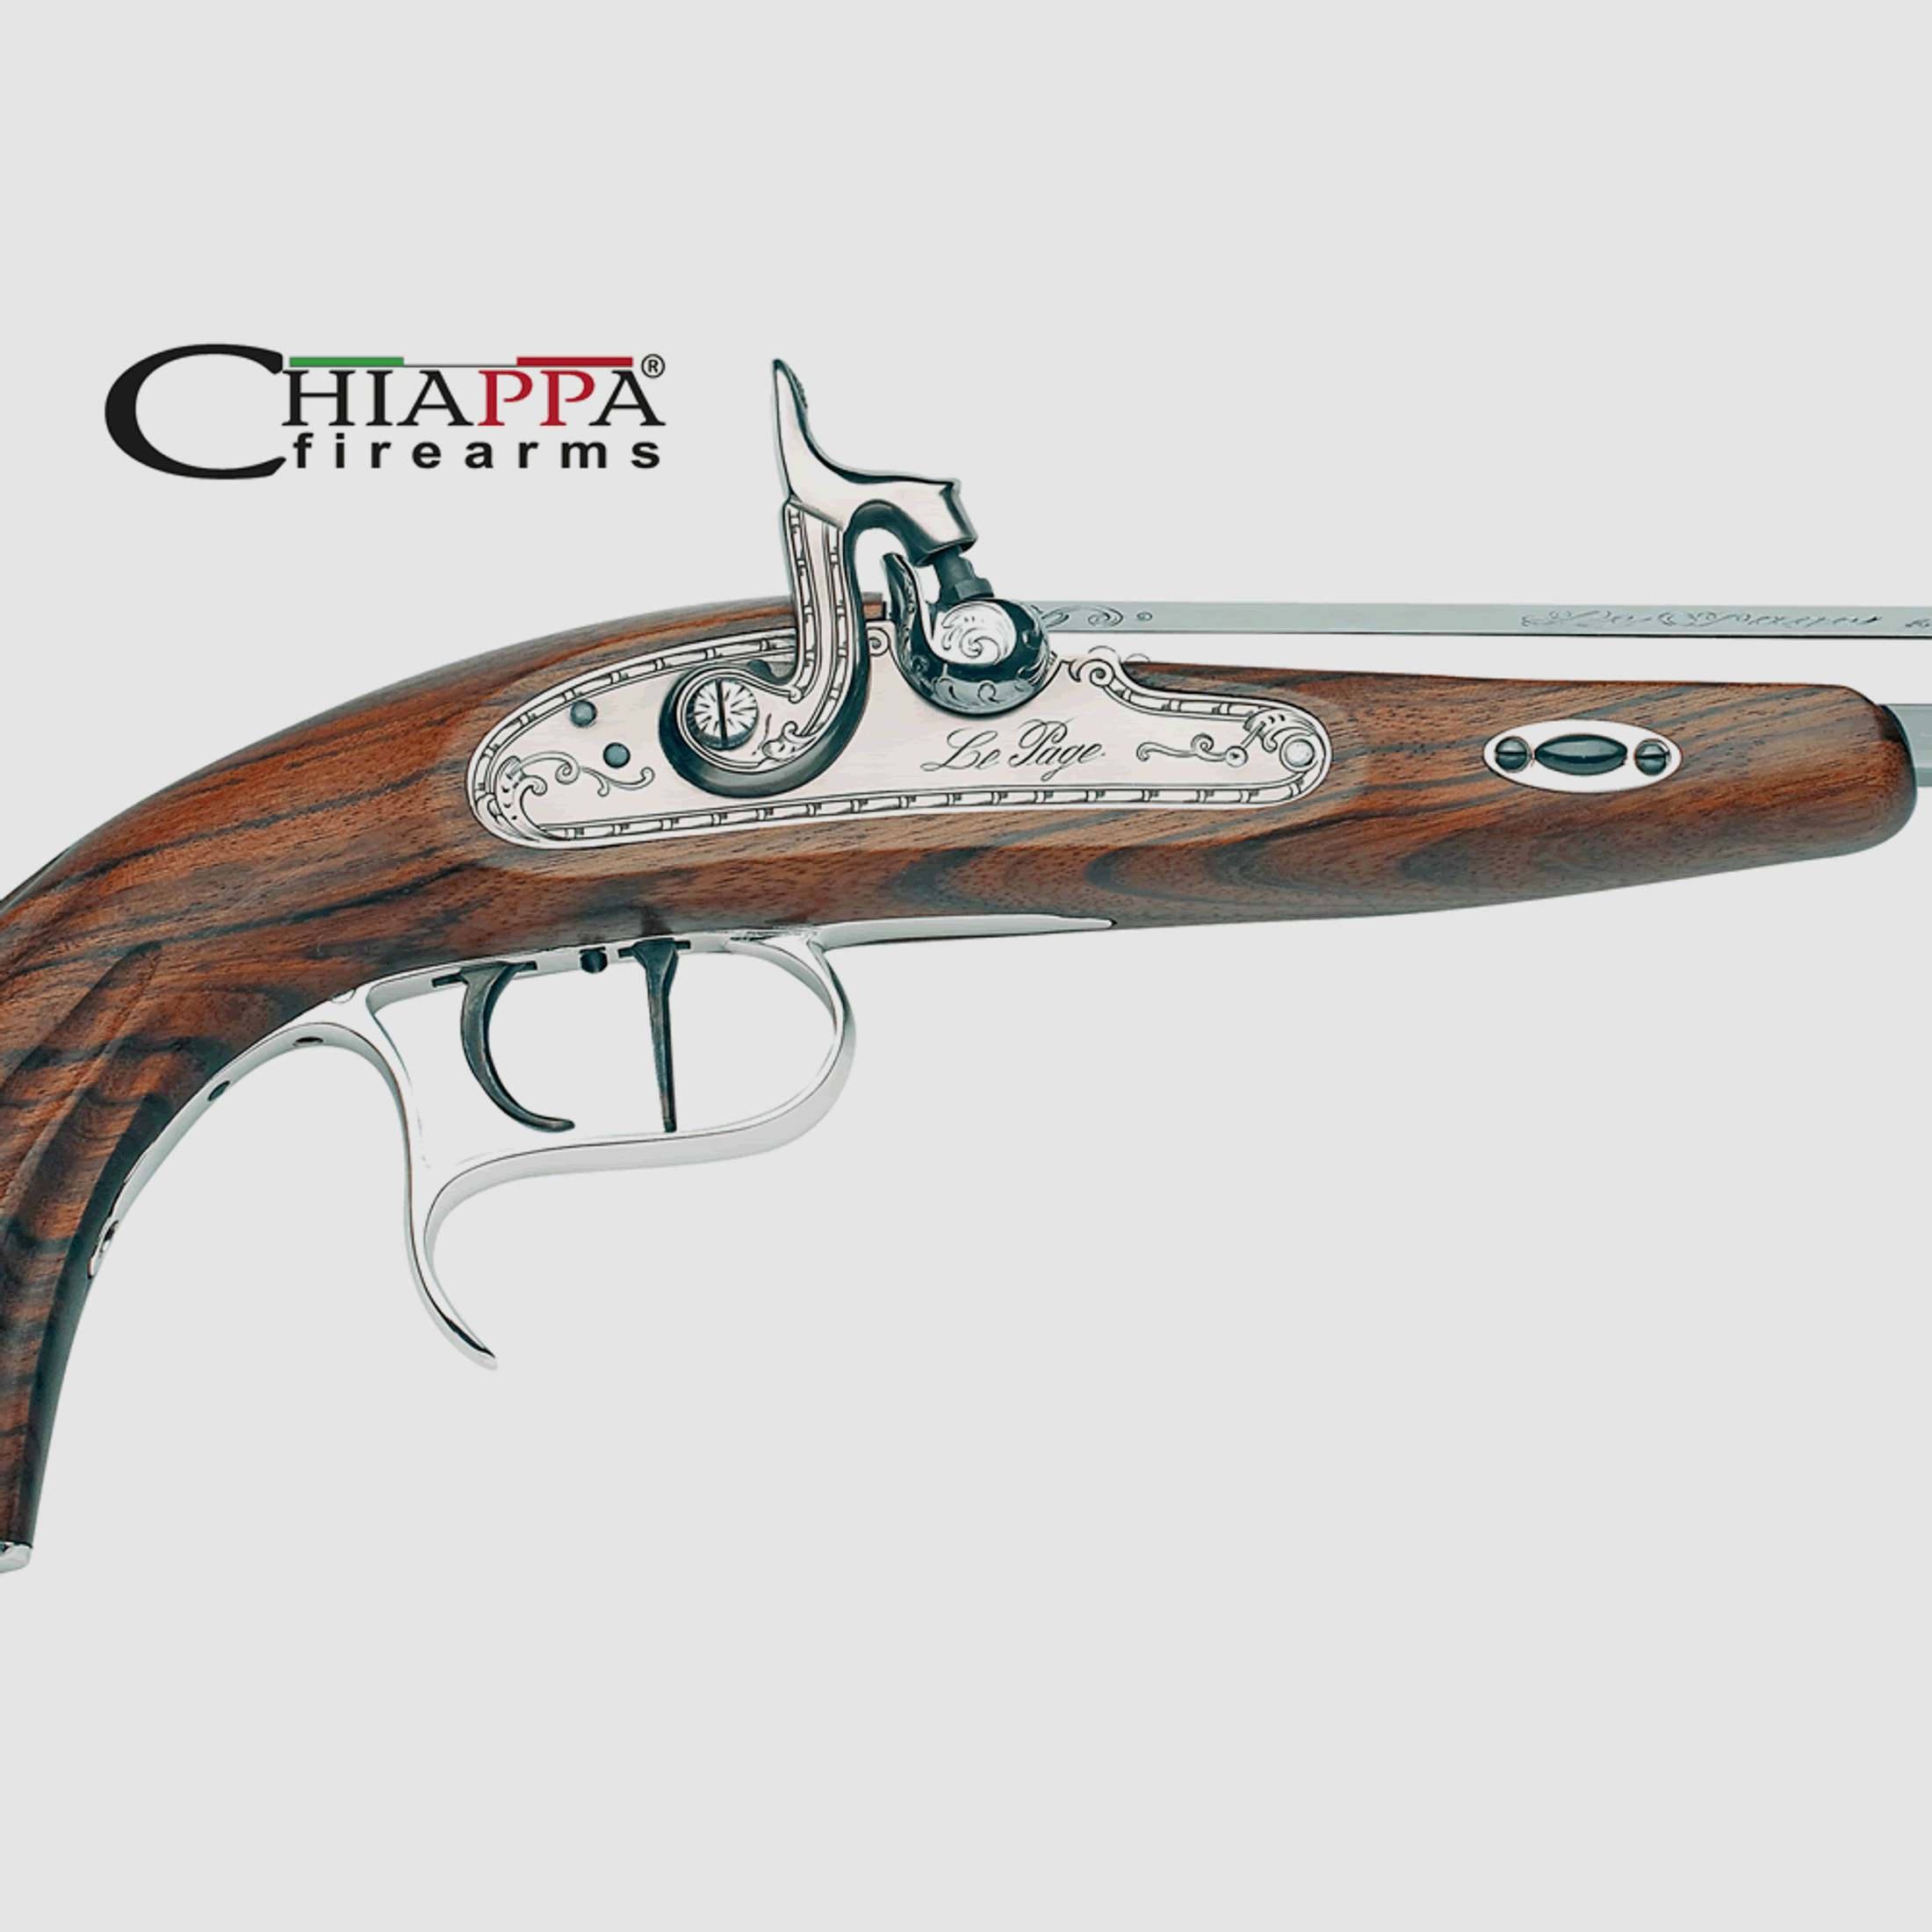 Vorderlader-Pistole Chiappa Napoleon Le Page, cal .45, 10 Zoll LauflĂ¤nge, white (P18)